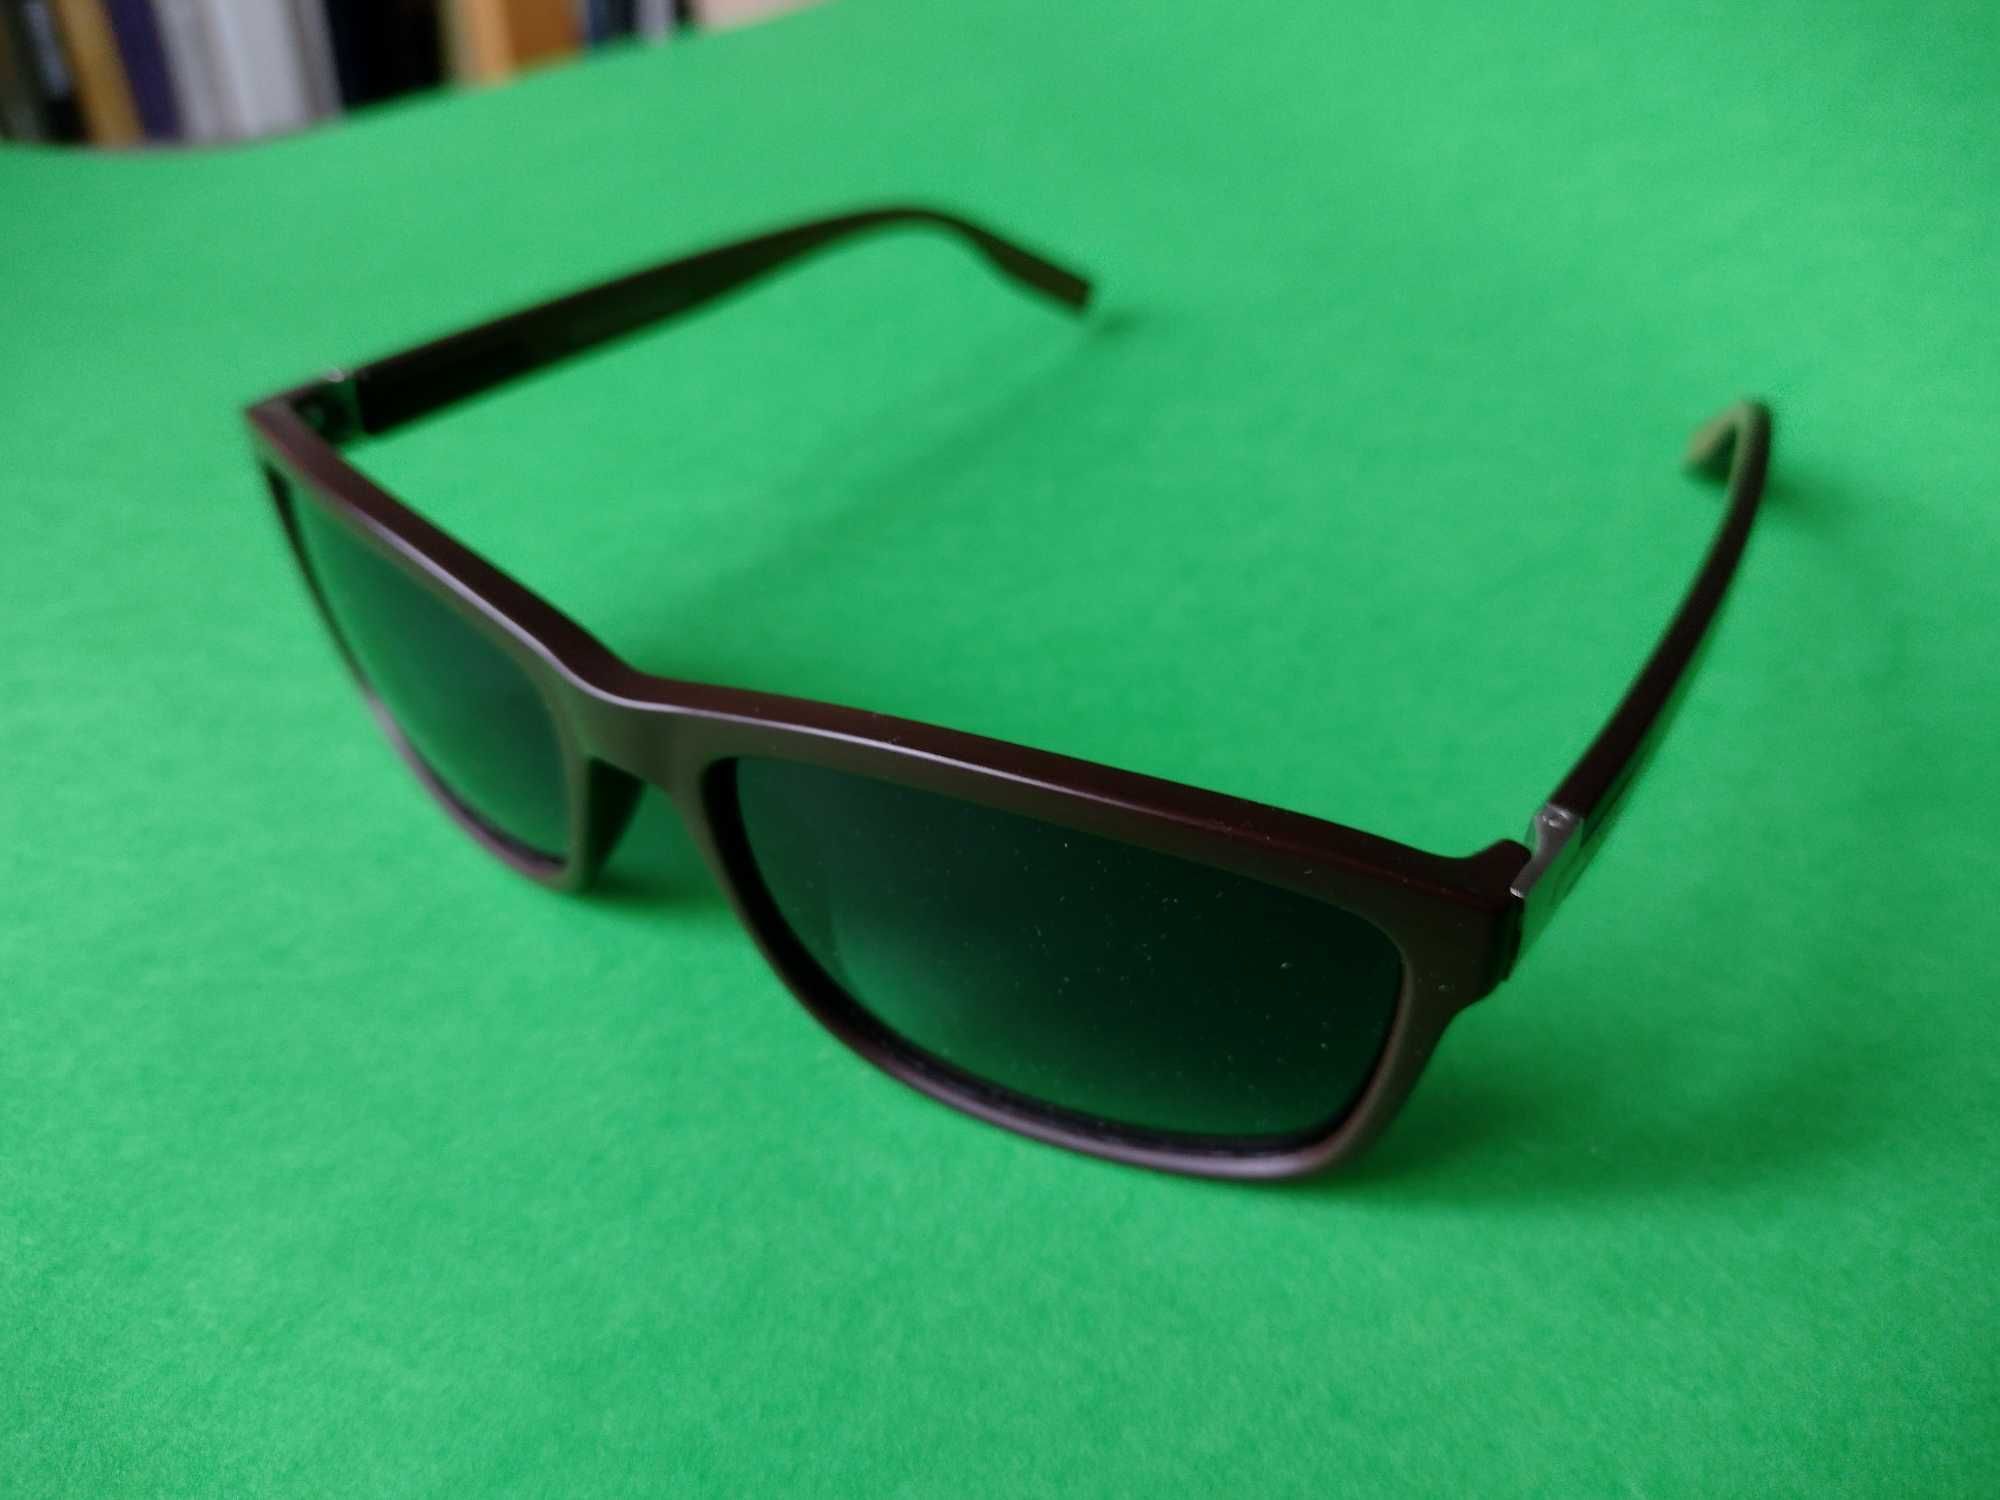 okulary przeciwsłoneczne Kenchi KE-S208